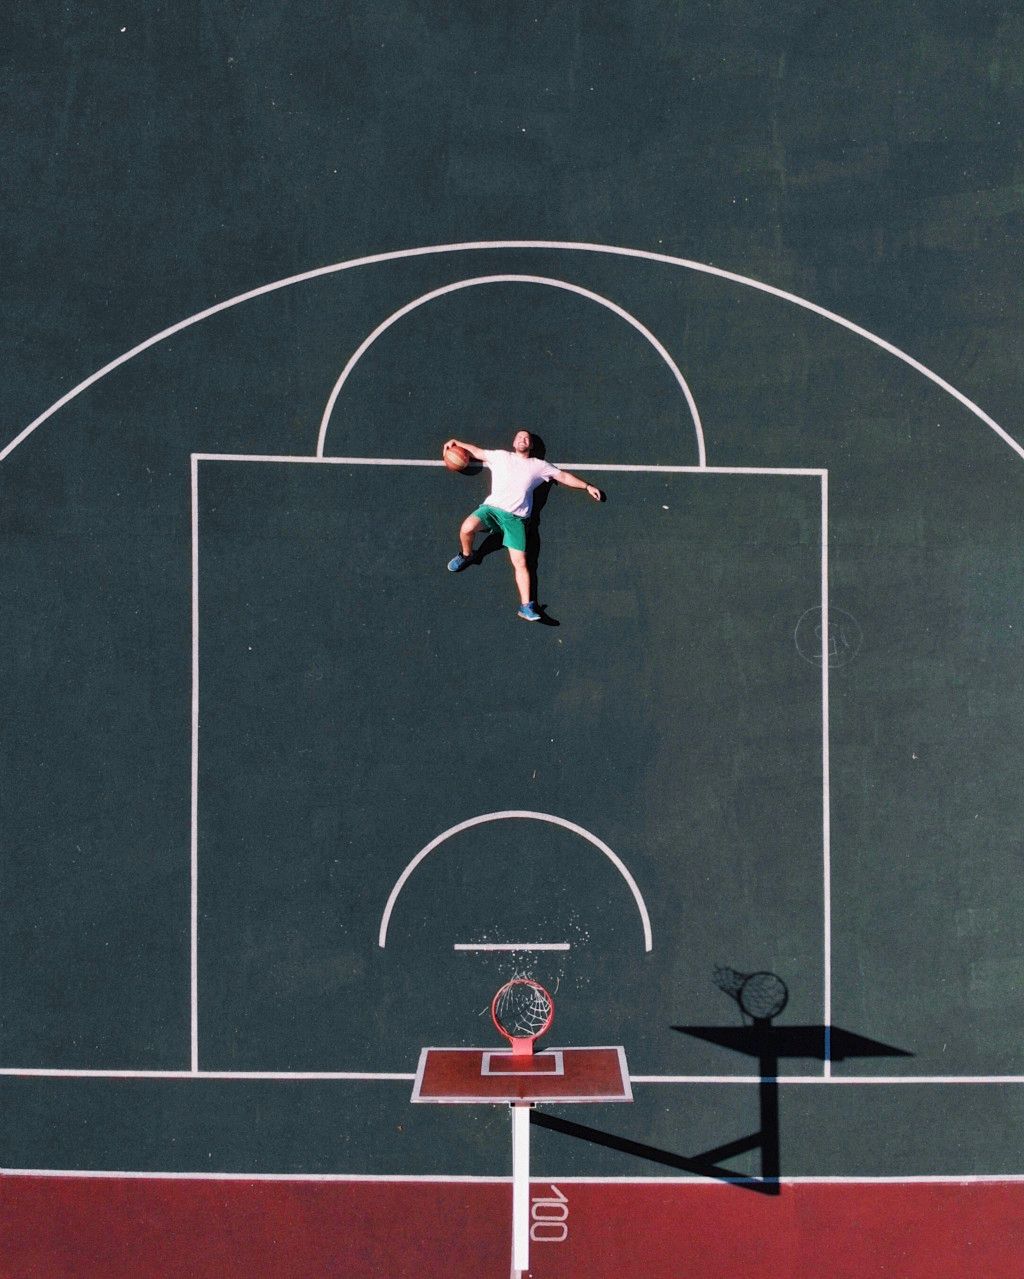 Das Bild zeigt einen erschöpften Basketballer der auf dem Court liegt als Sinnbild für den Motivationsverlust beim Übertrainingssyndrom